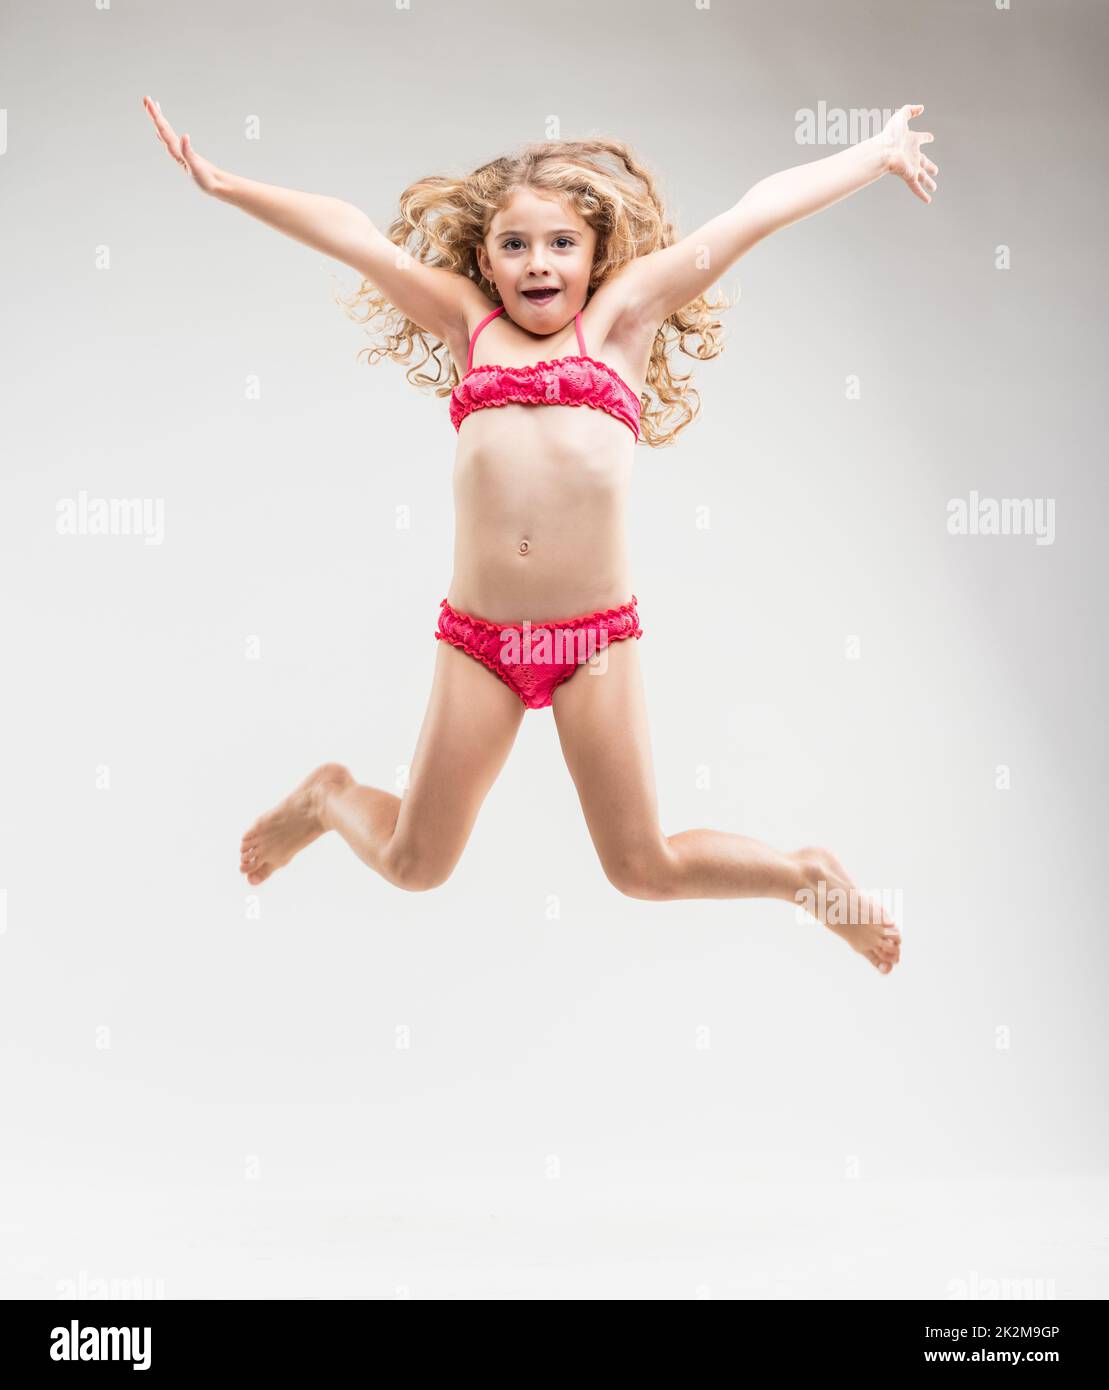 Agiles, überschwängliches kleines Mädchen, das in die Luft springt Stockfoto